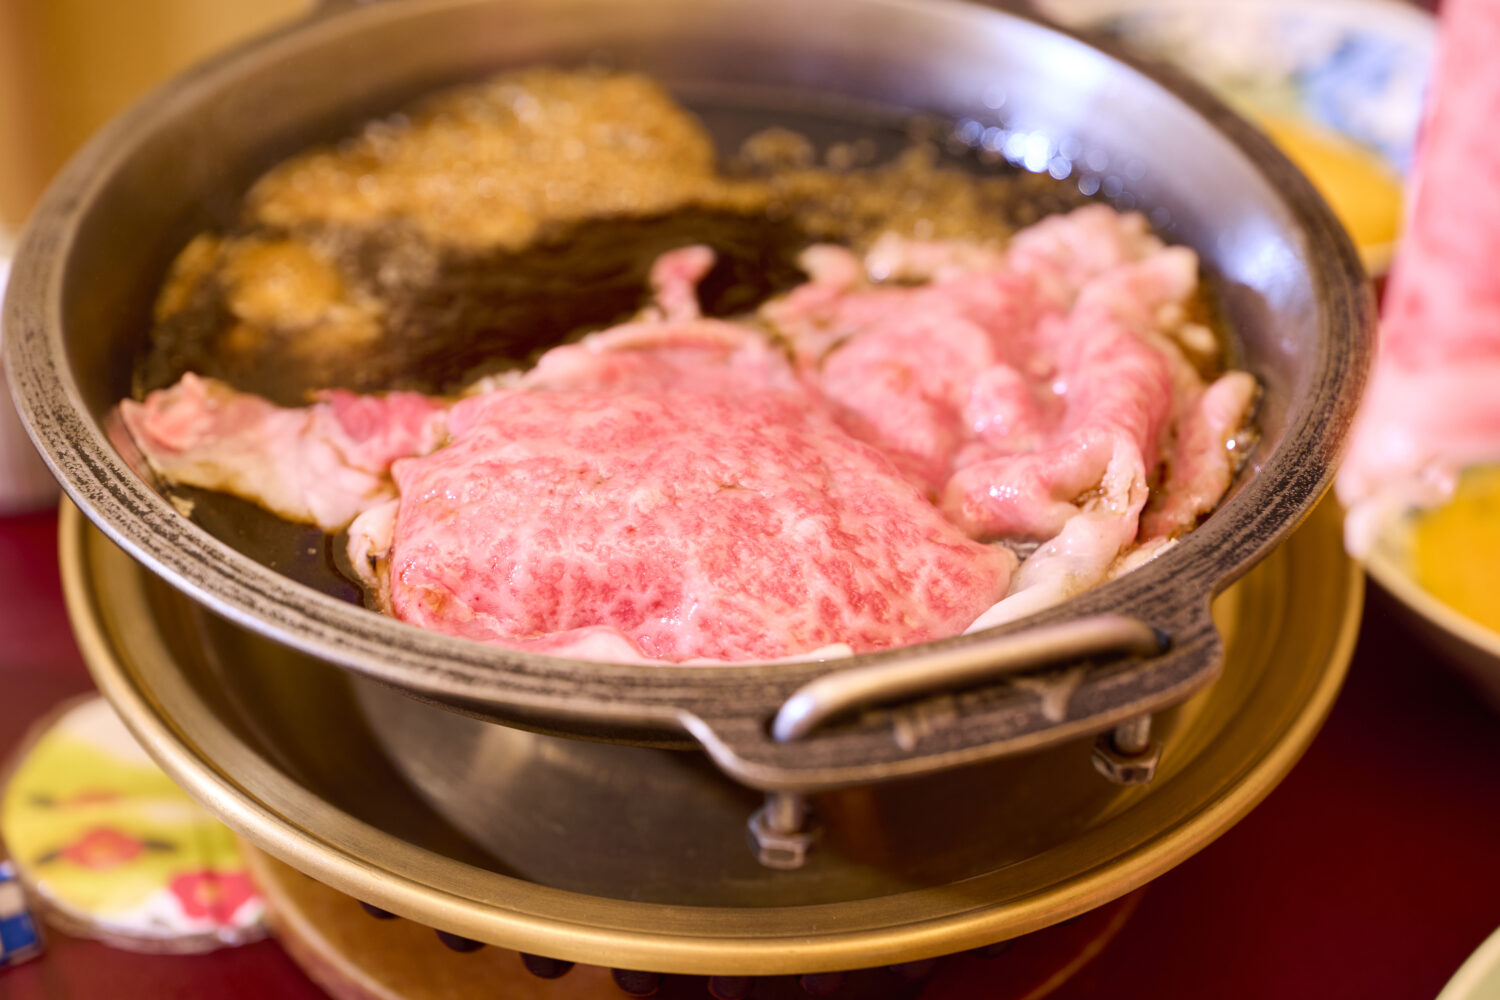 割り下が沸いたら、牛肉の登場。重なる部分がないよう、なるべく開いて鍋に敷きます。